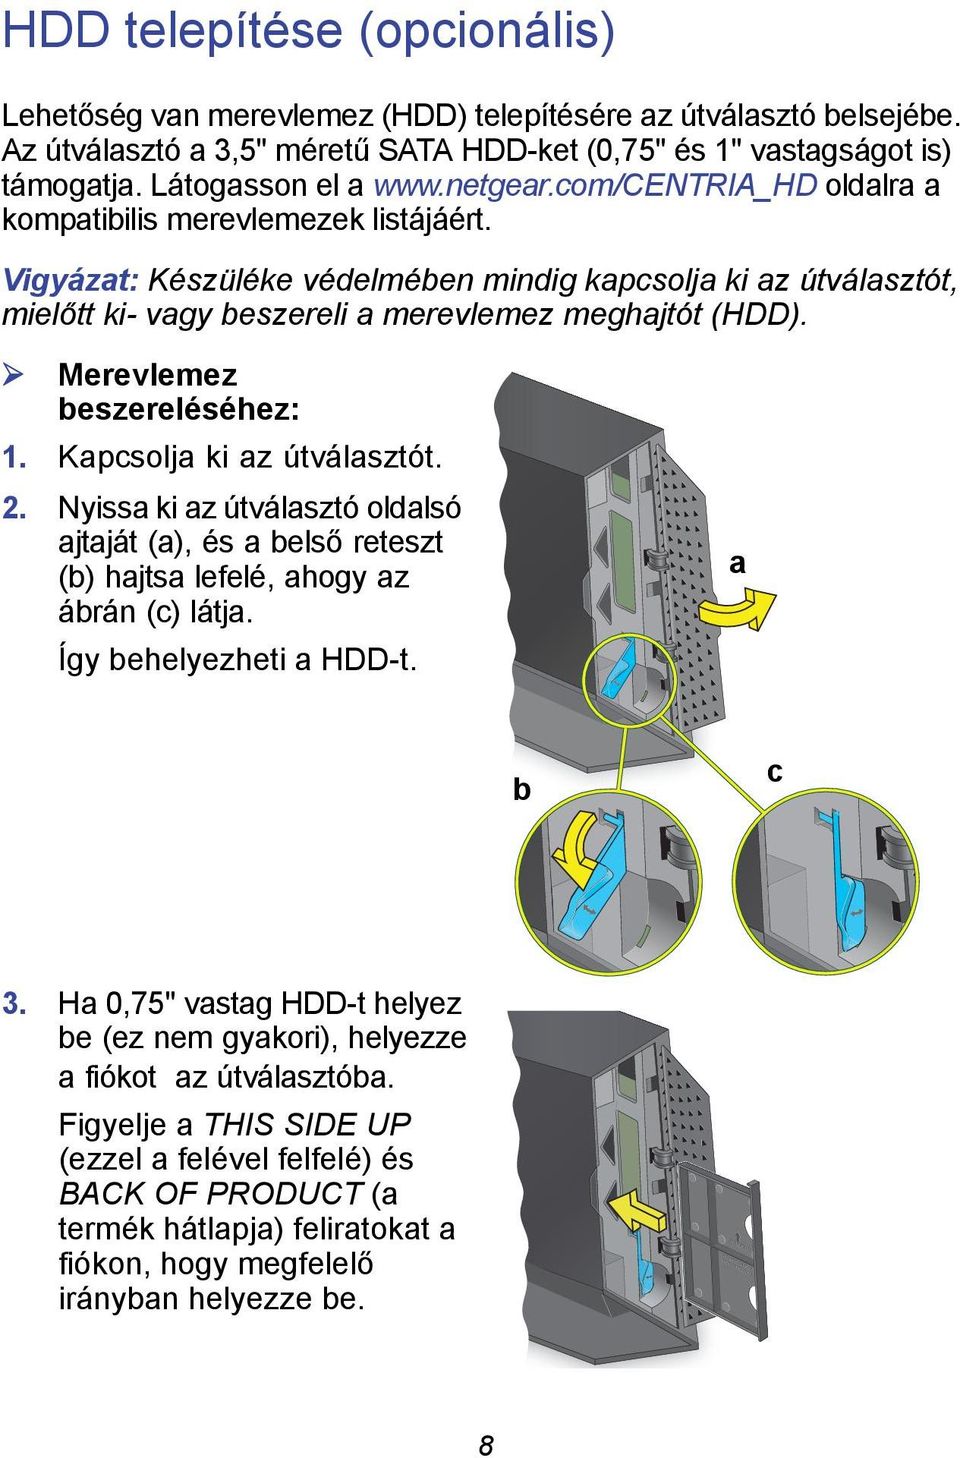 Merevlemez beszereléséhez: 1. Kapcsolja ki az útválasztót. 2. Nyissa ki az útválasztó oldalsó ajtaját (a), és a belső reteszt (b) hajtsa lefelé, ahogy az ábrán (c) látja. Így behelyezheti a HDD-t.